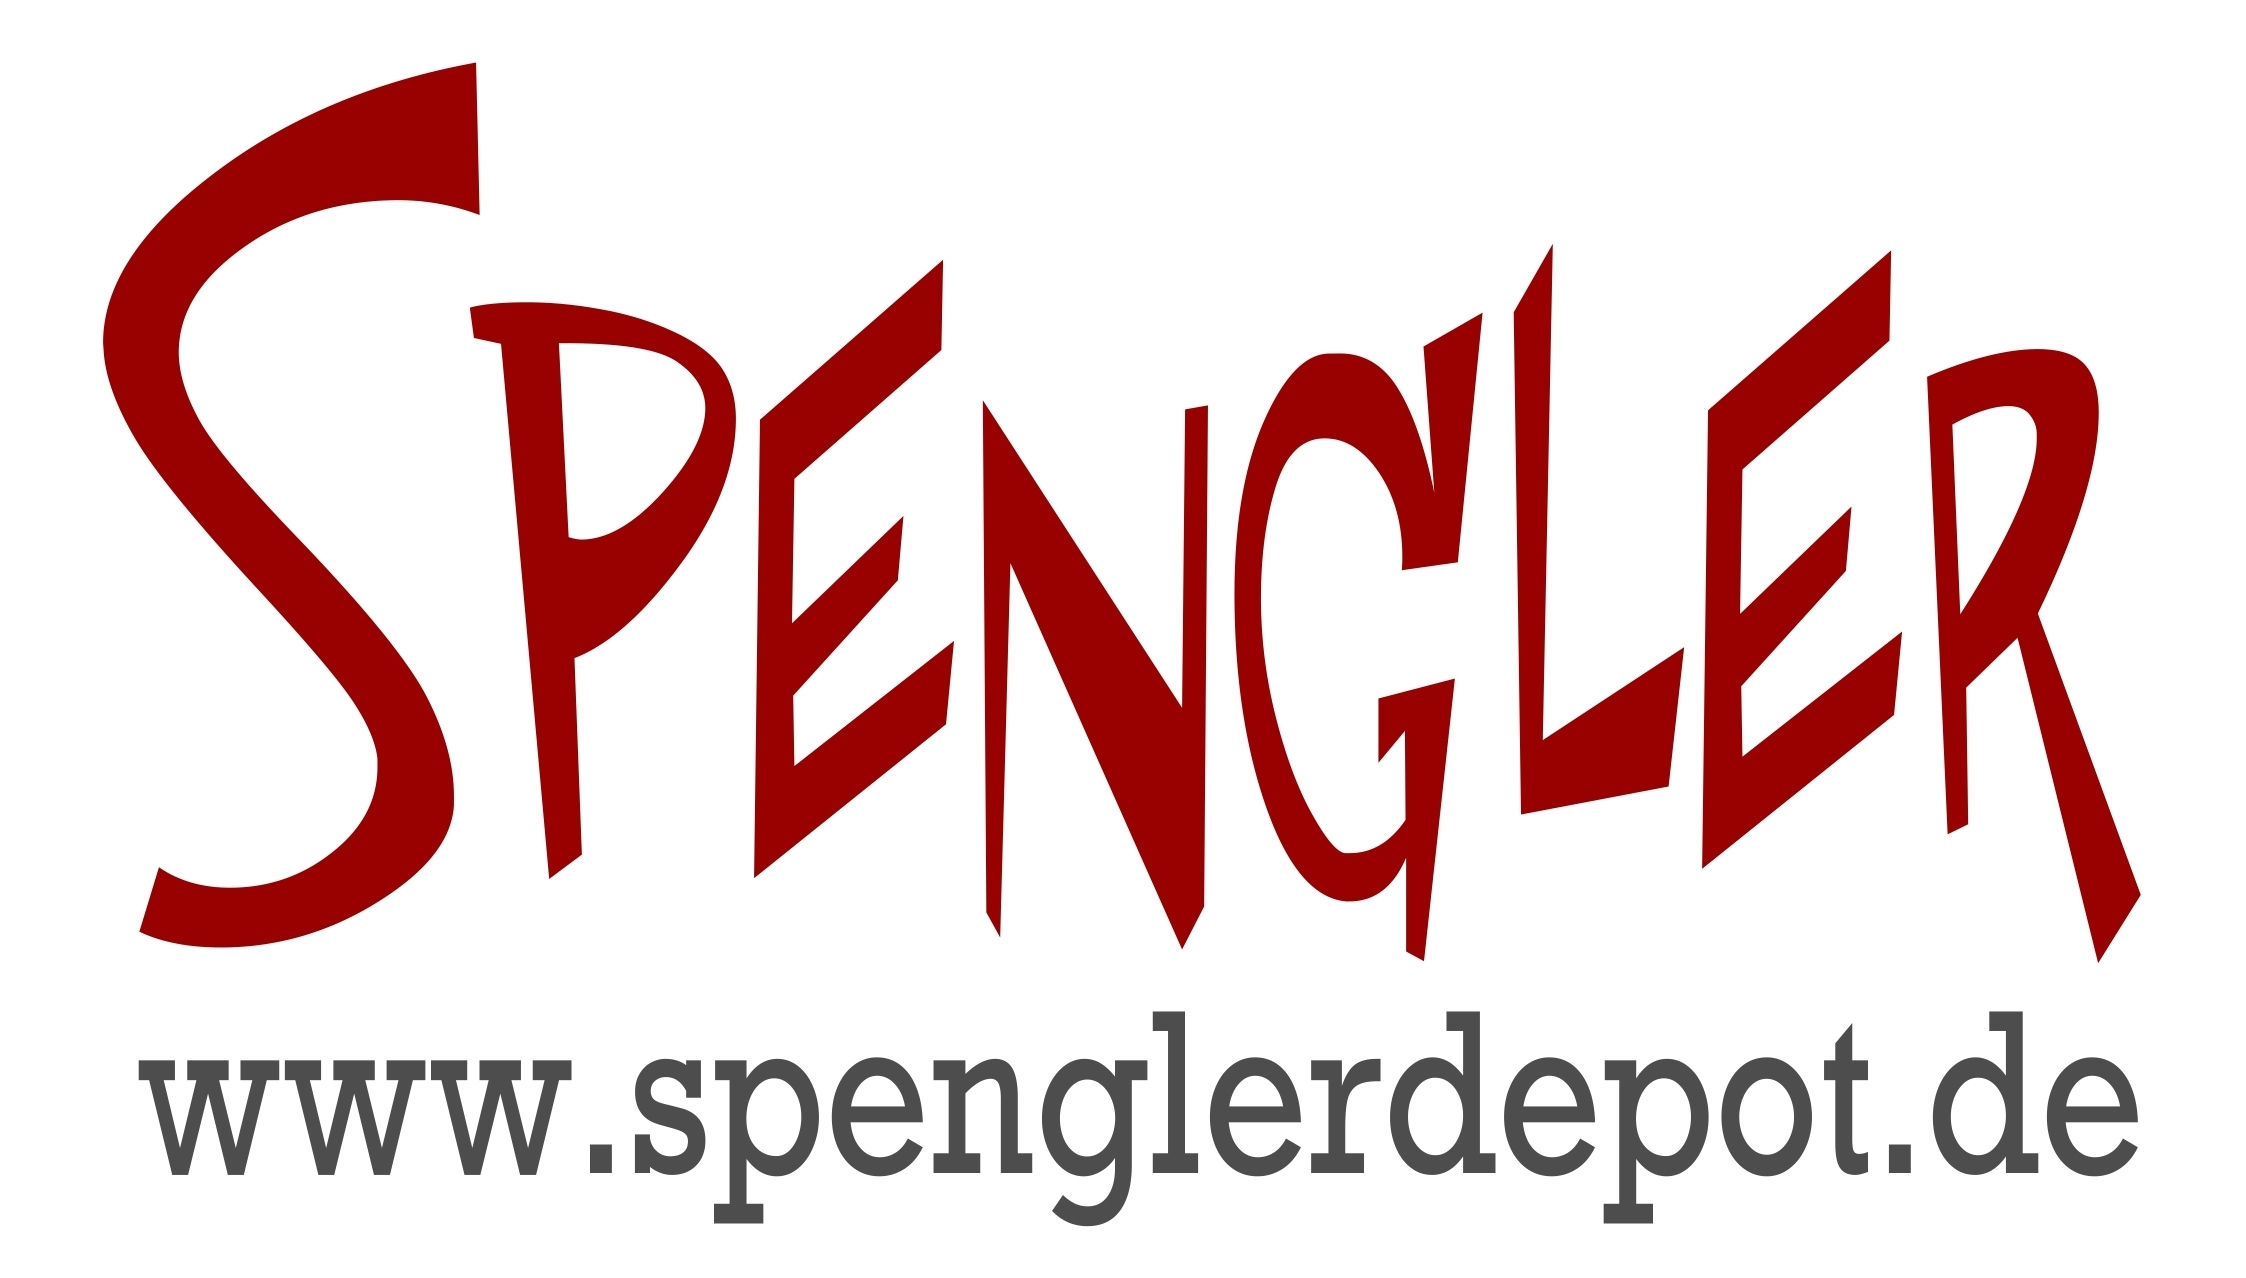 Spengler Depot